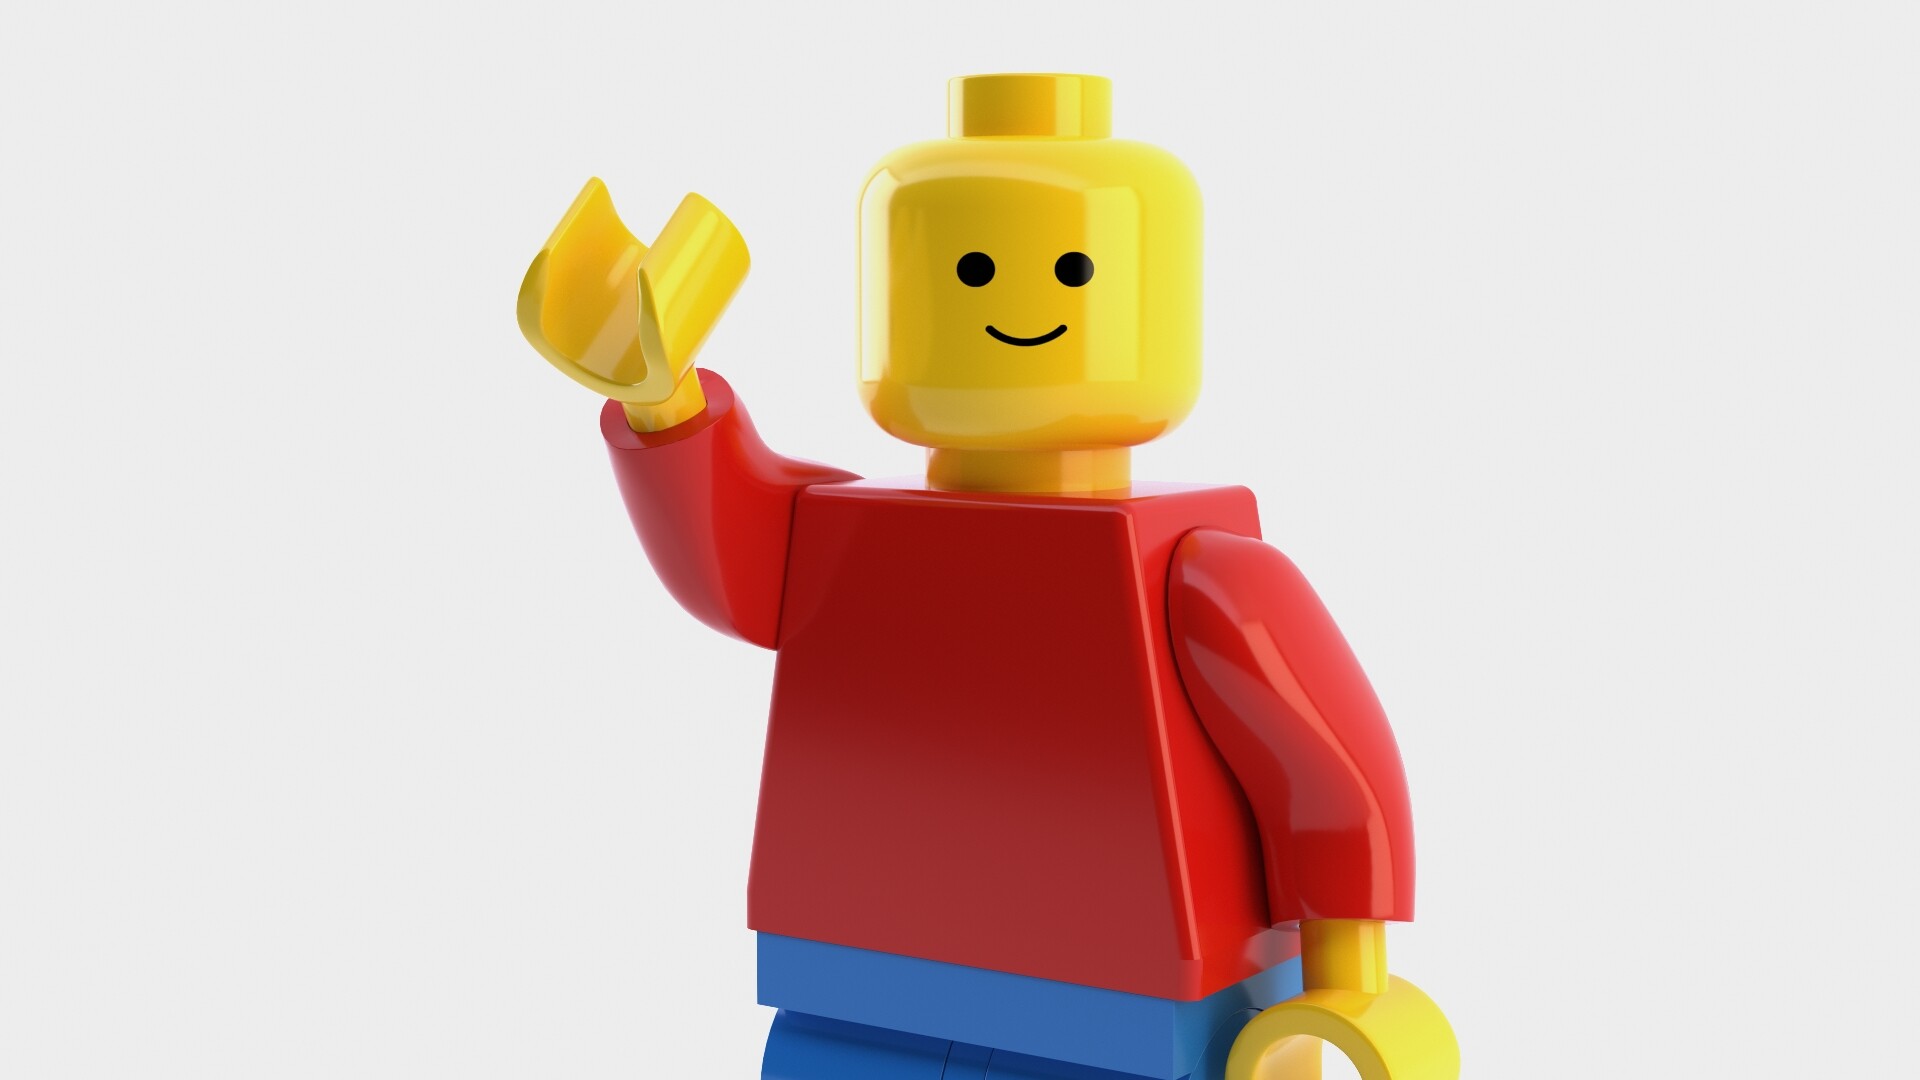 ArtStation - Lego man